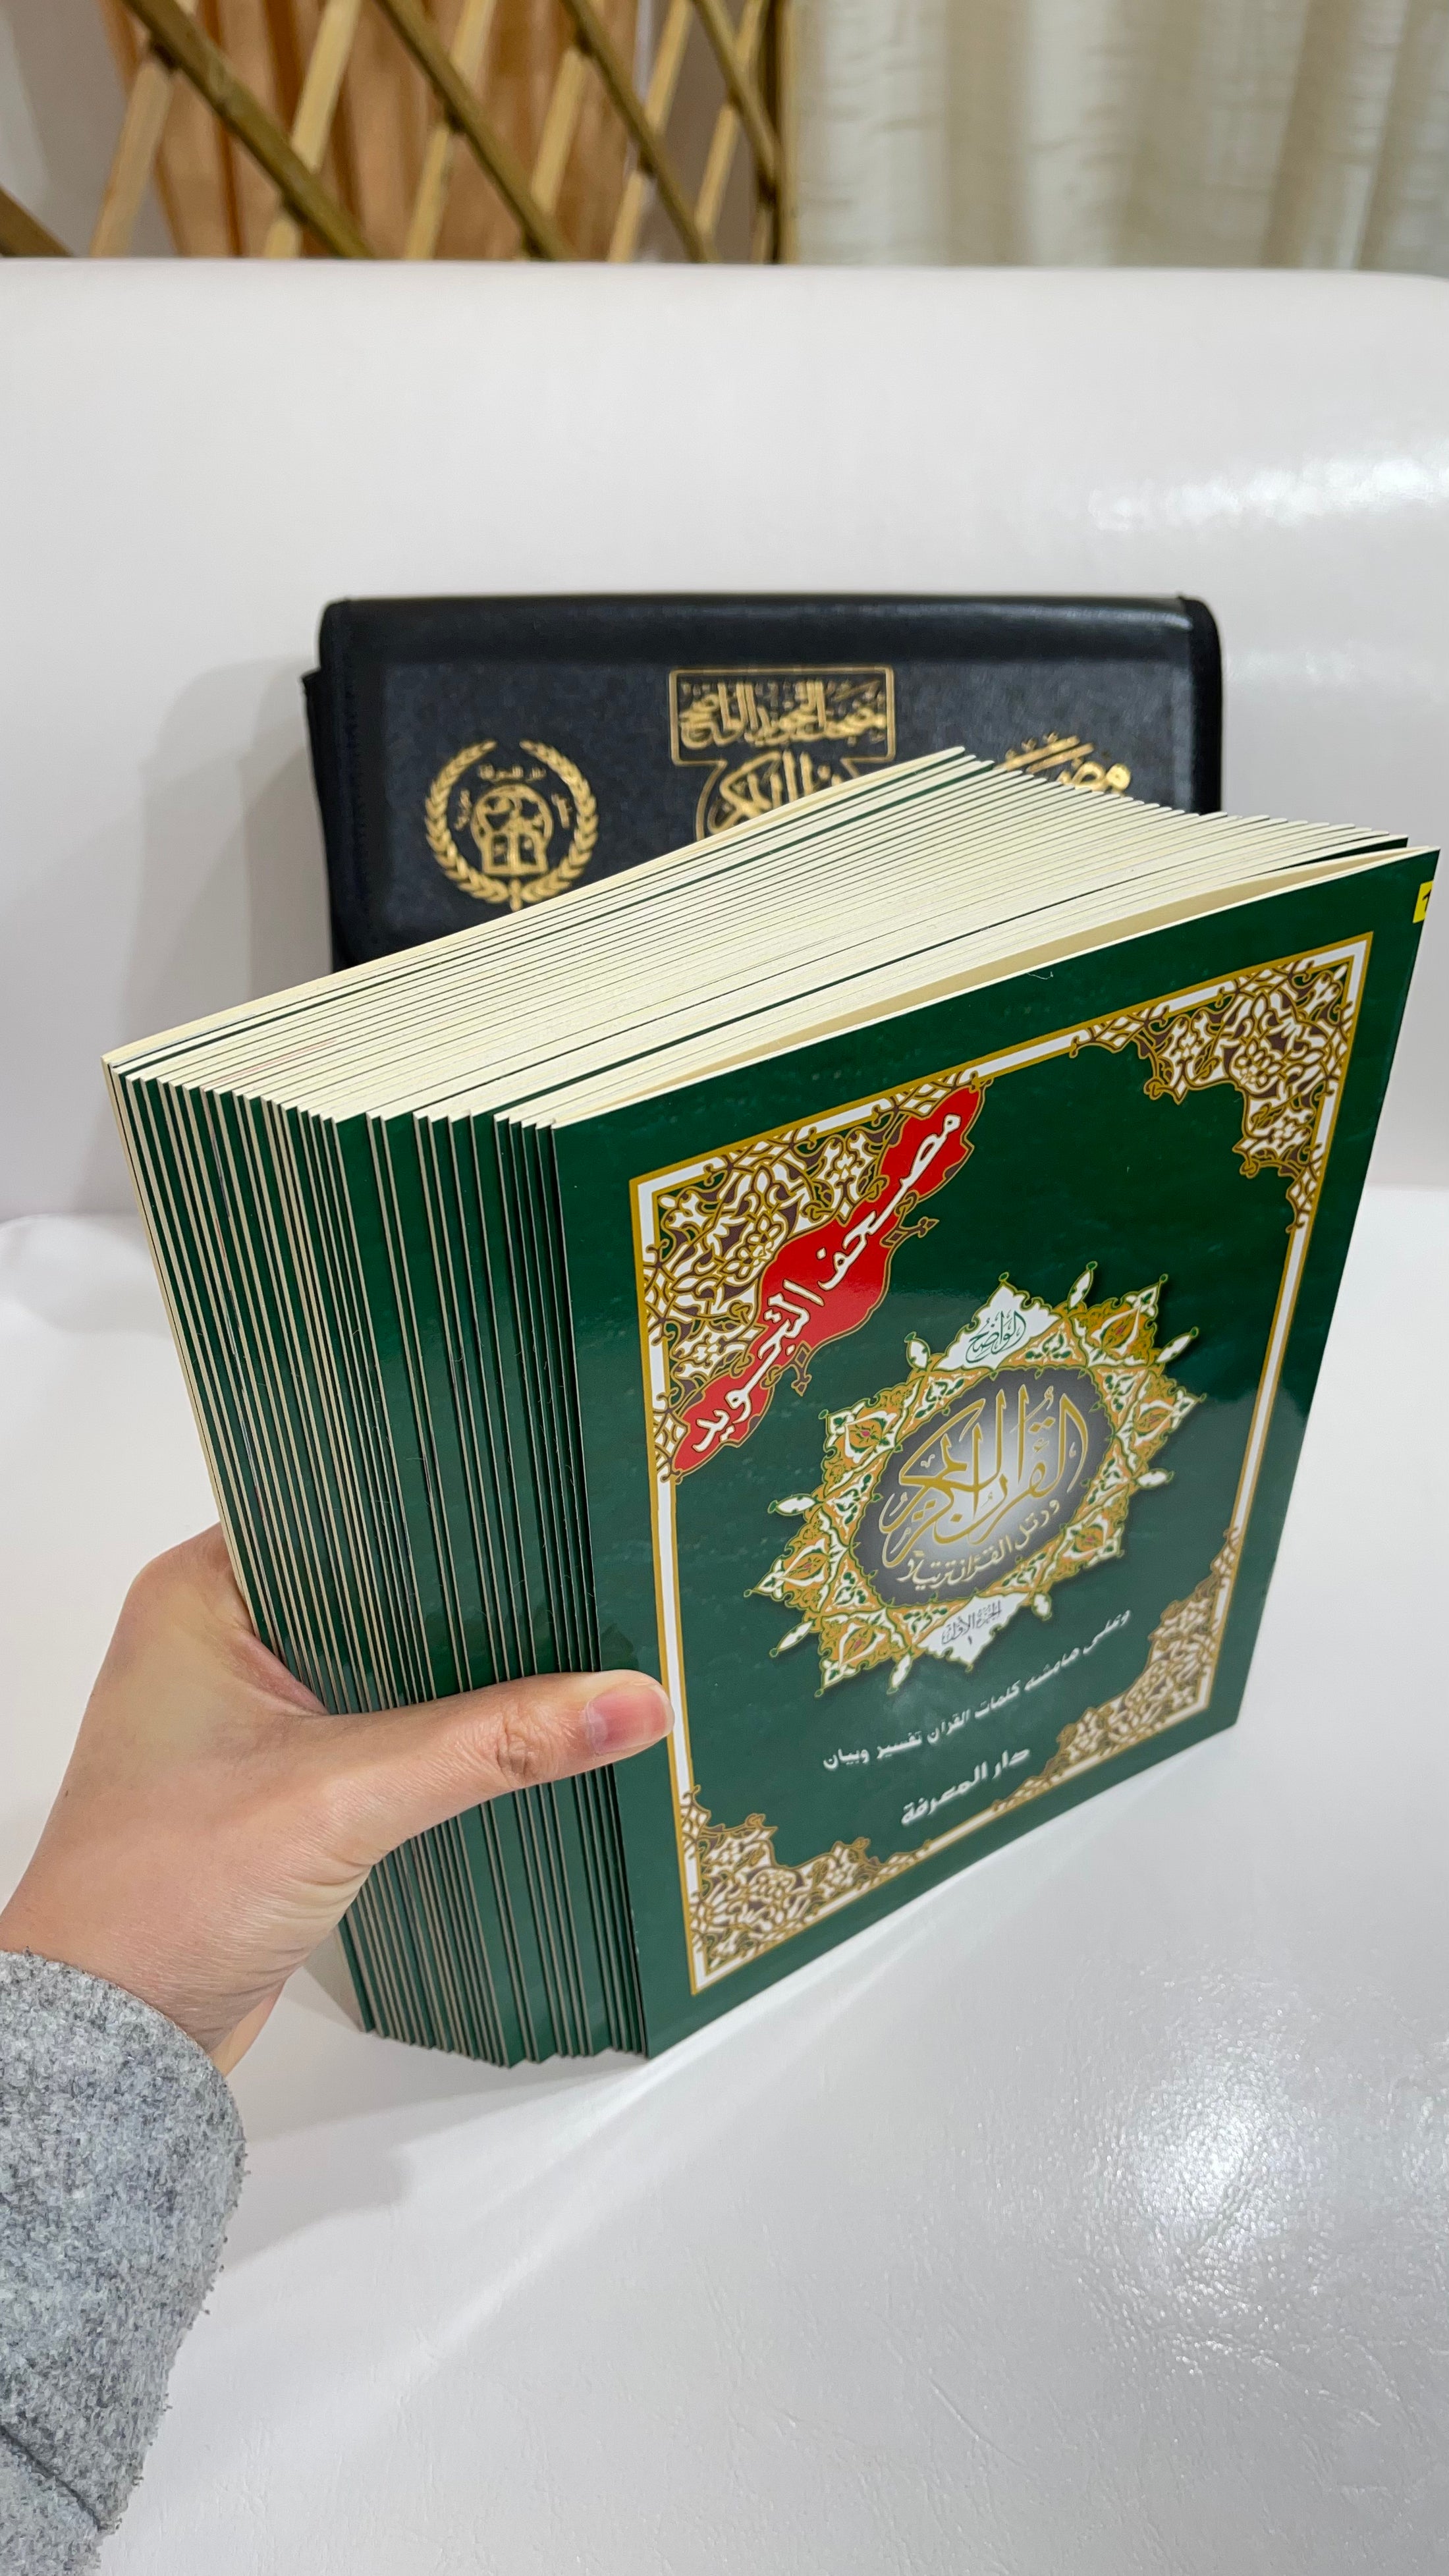 Corano tajwid khatma - hafs- Hijab Paradise - arabo - Corano è completo di tutte le 114 sure divise in 30 libricini